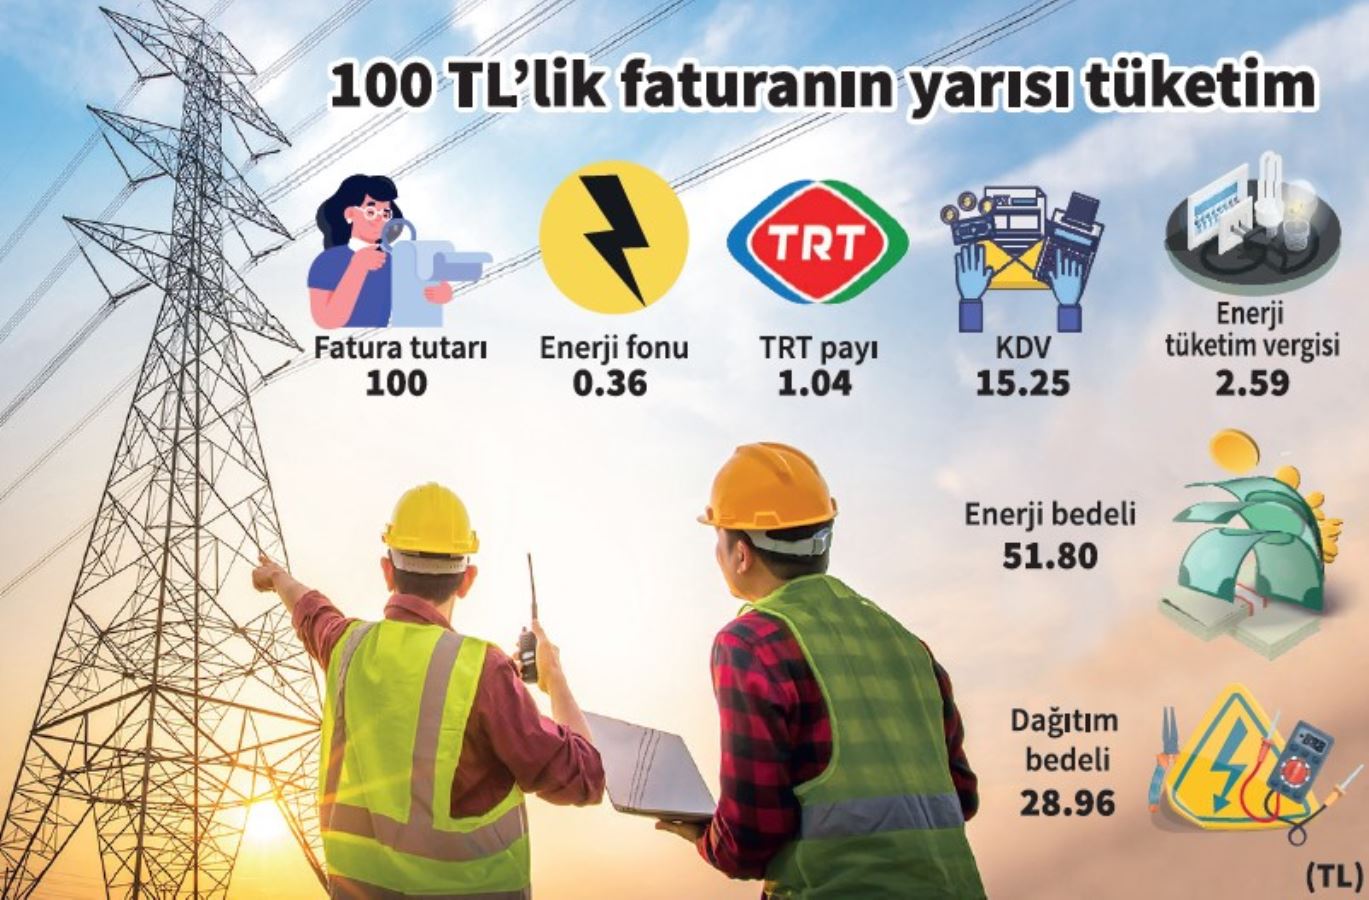 TRT payının kalkması, 100 TL’lik faturaya sadece 1.65 TL olarak yansıyor